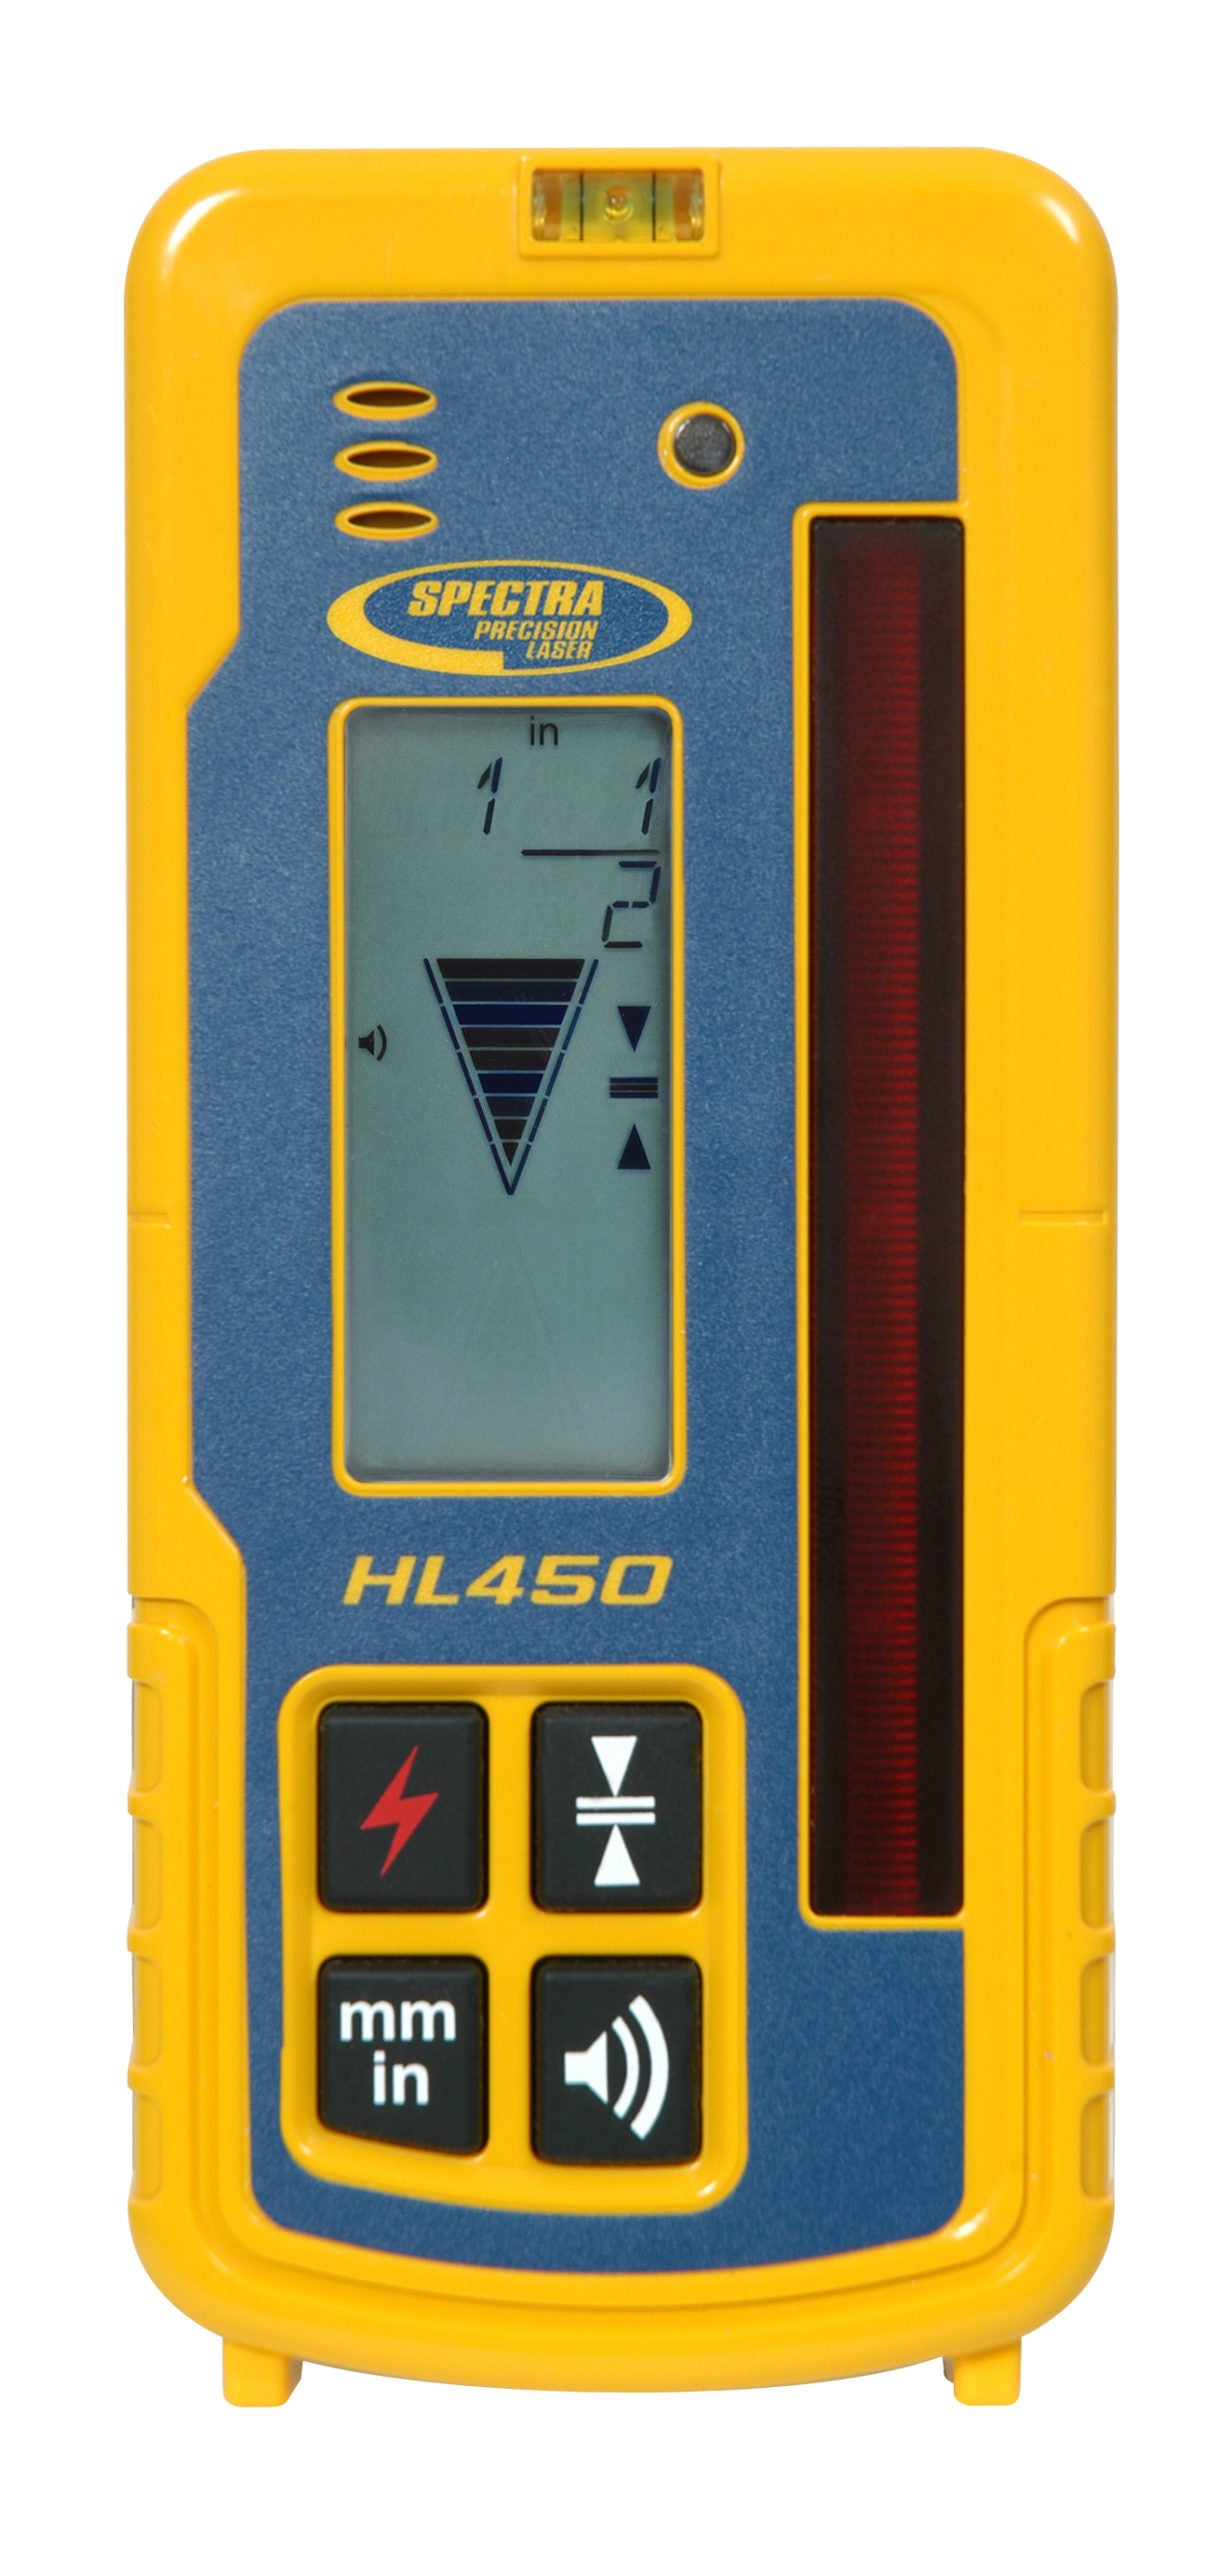 Spectra HL450- Laser Receiver